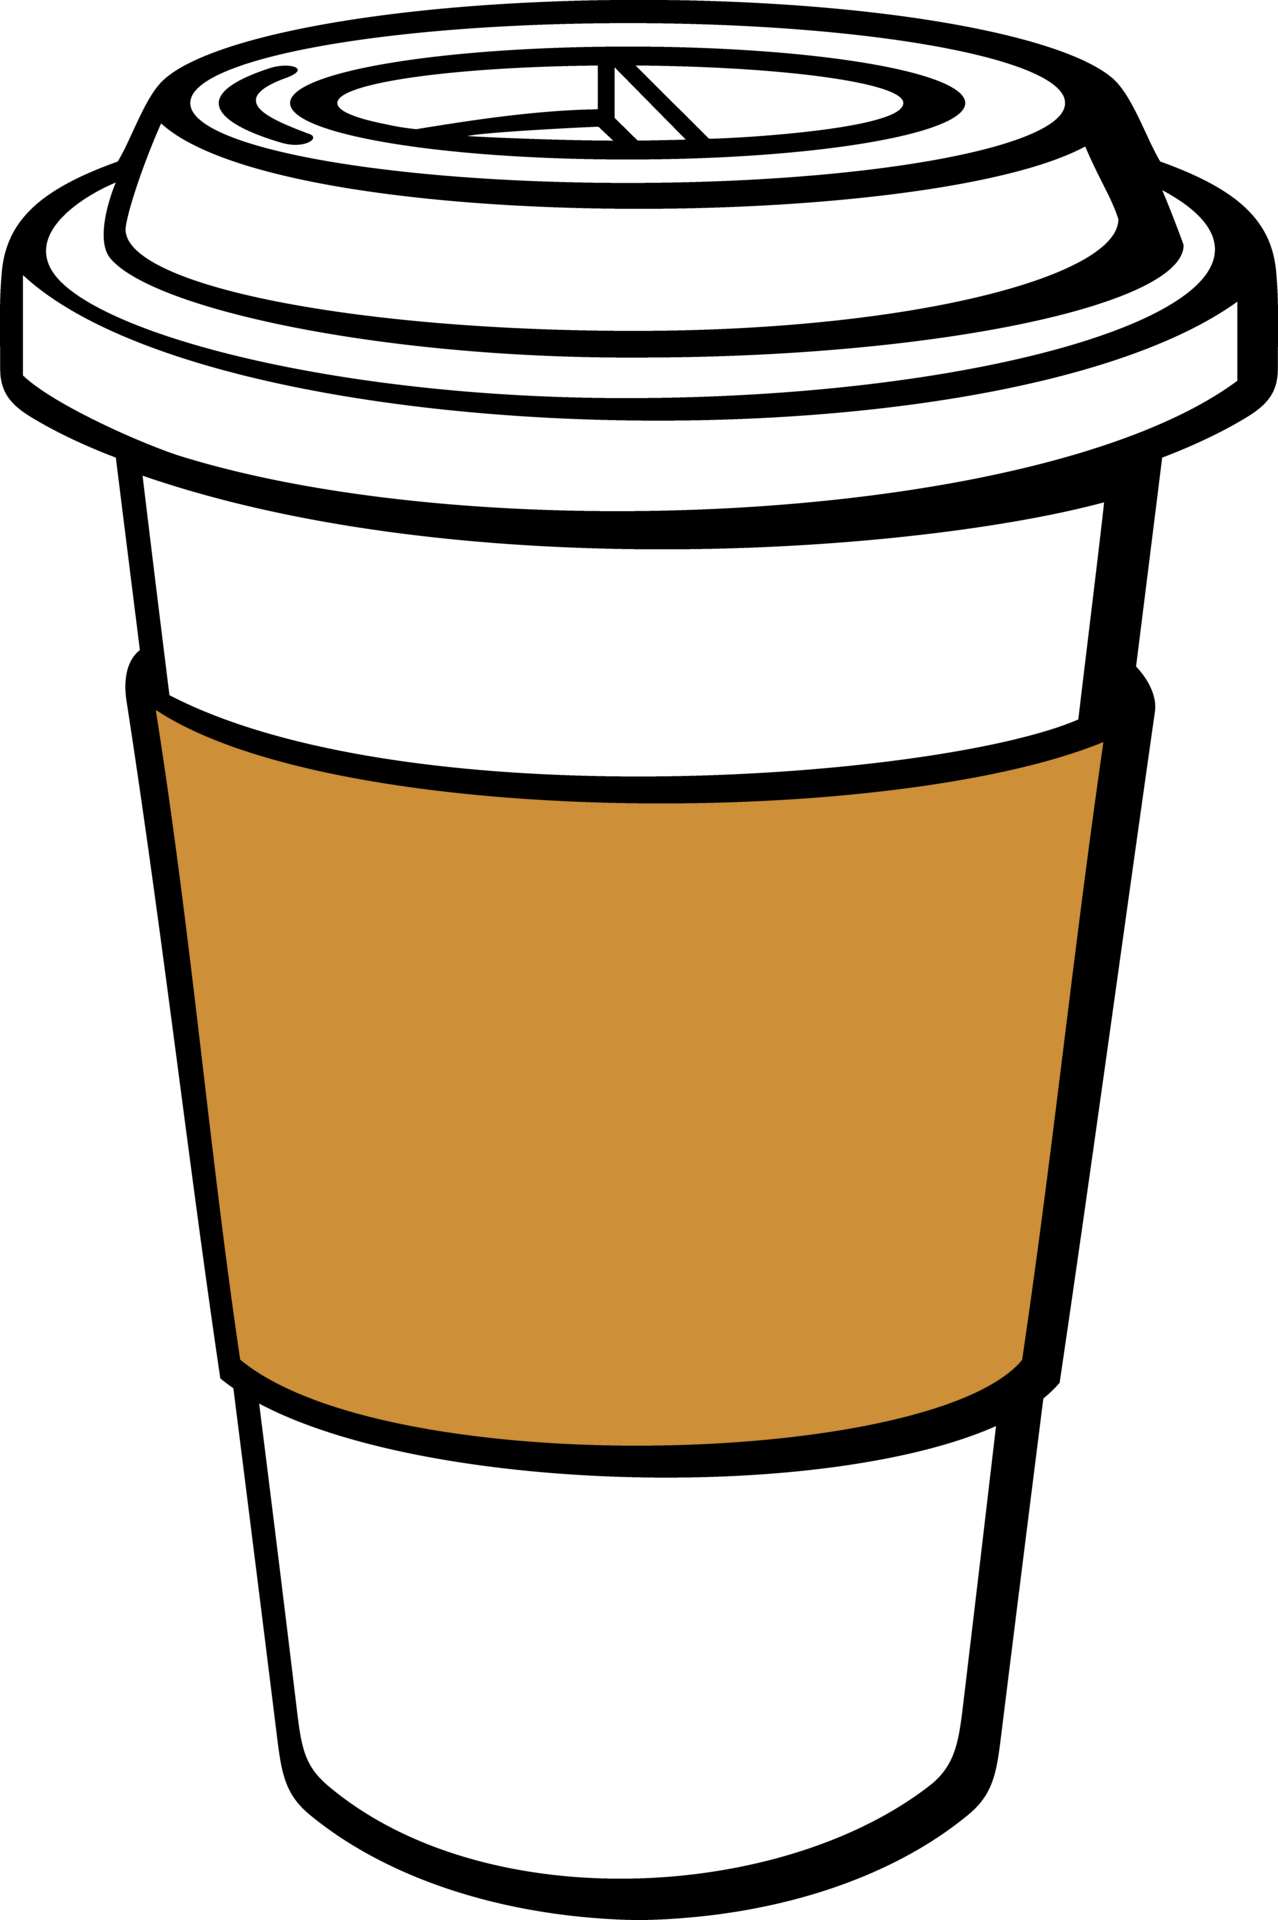 Premium Vector | Paper cup logo illustration graphic design